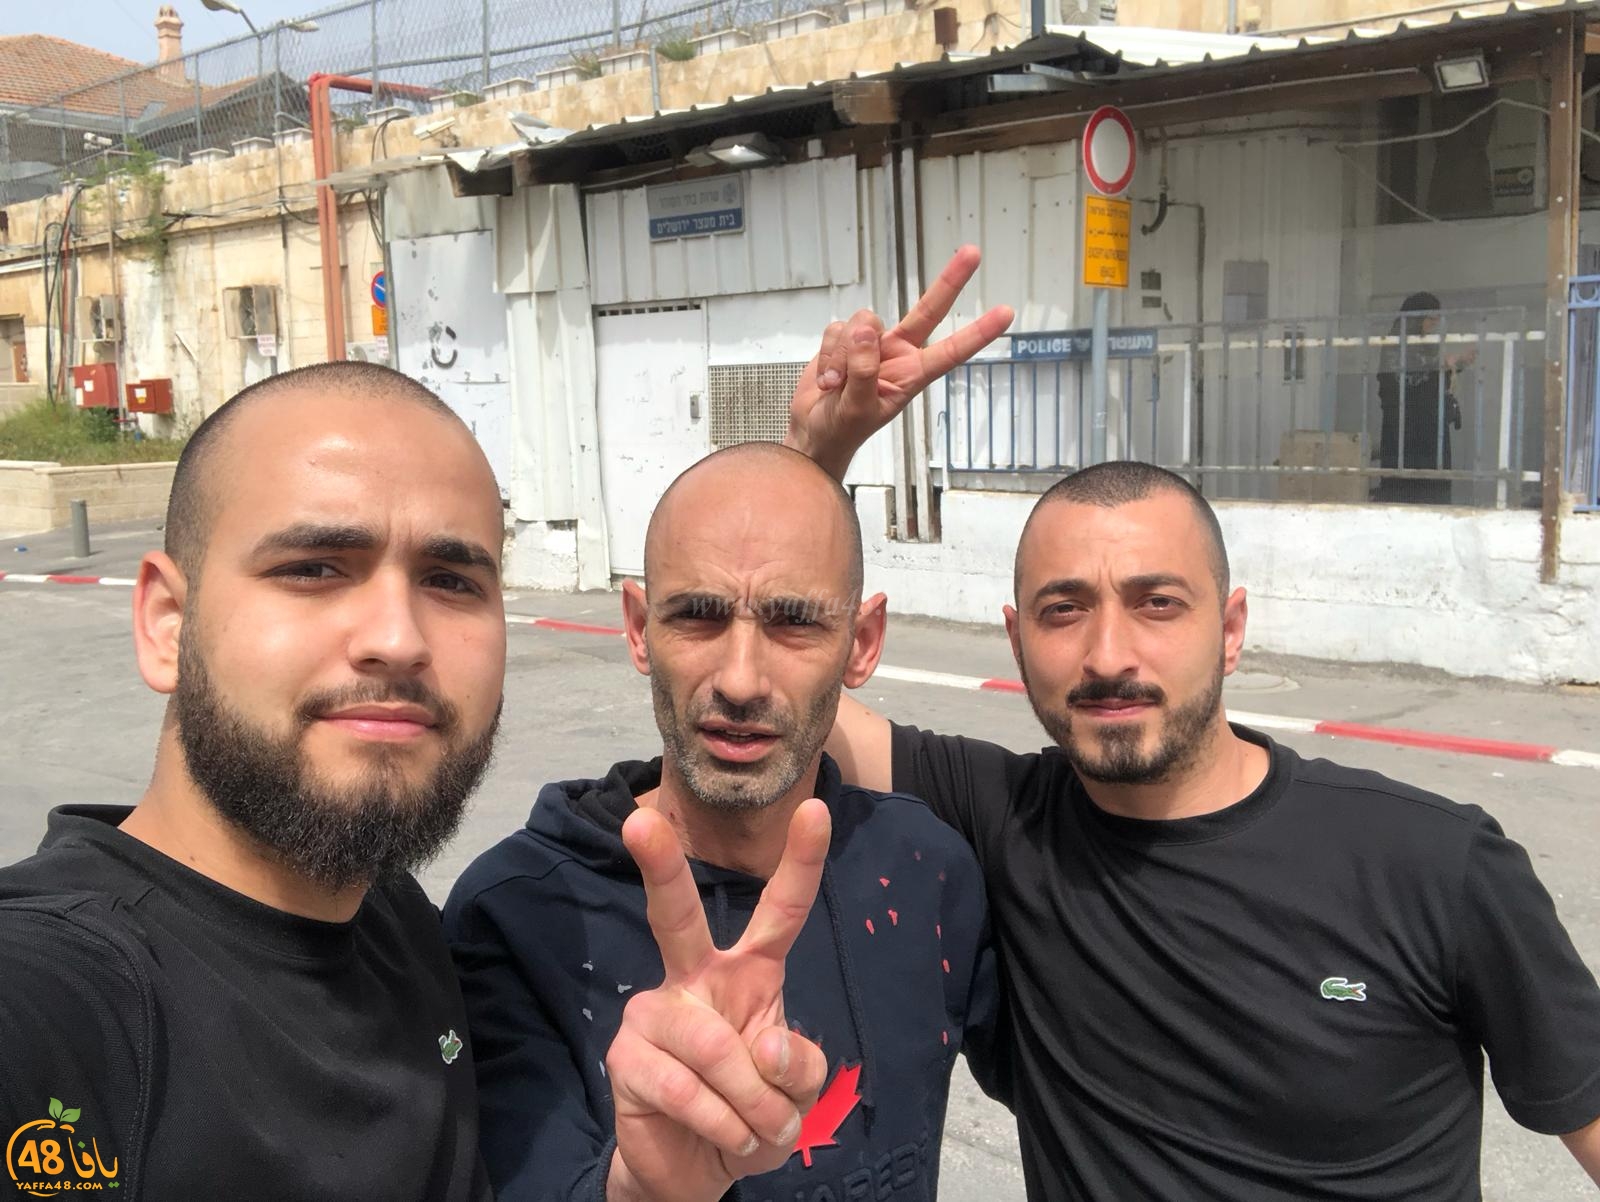  اطلاق سراح الناشط اليافاوي إياد زبدة وابعاده عن المسجد الأقصى لـ15 يوماً 